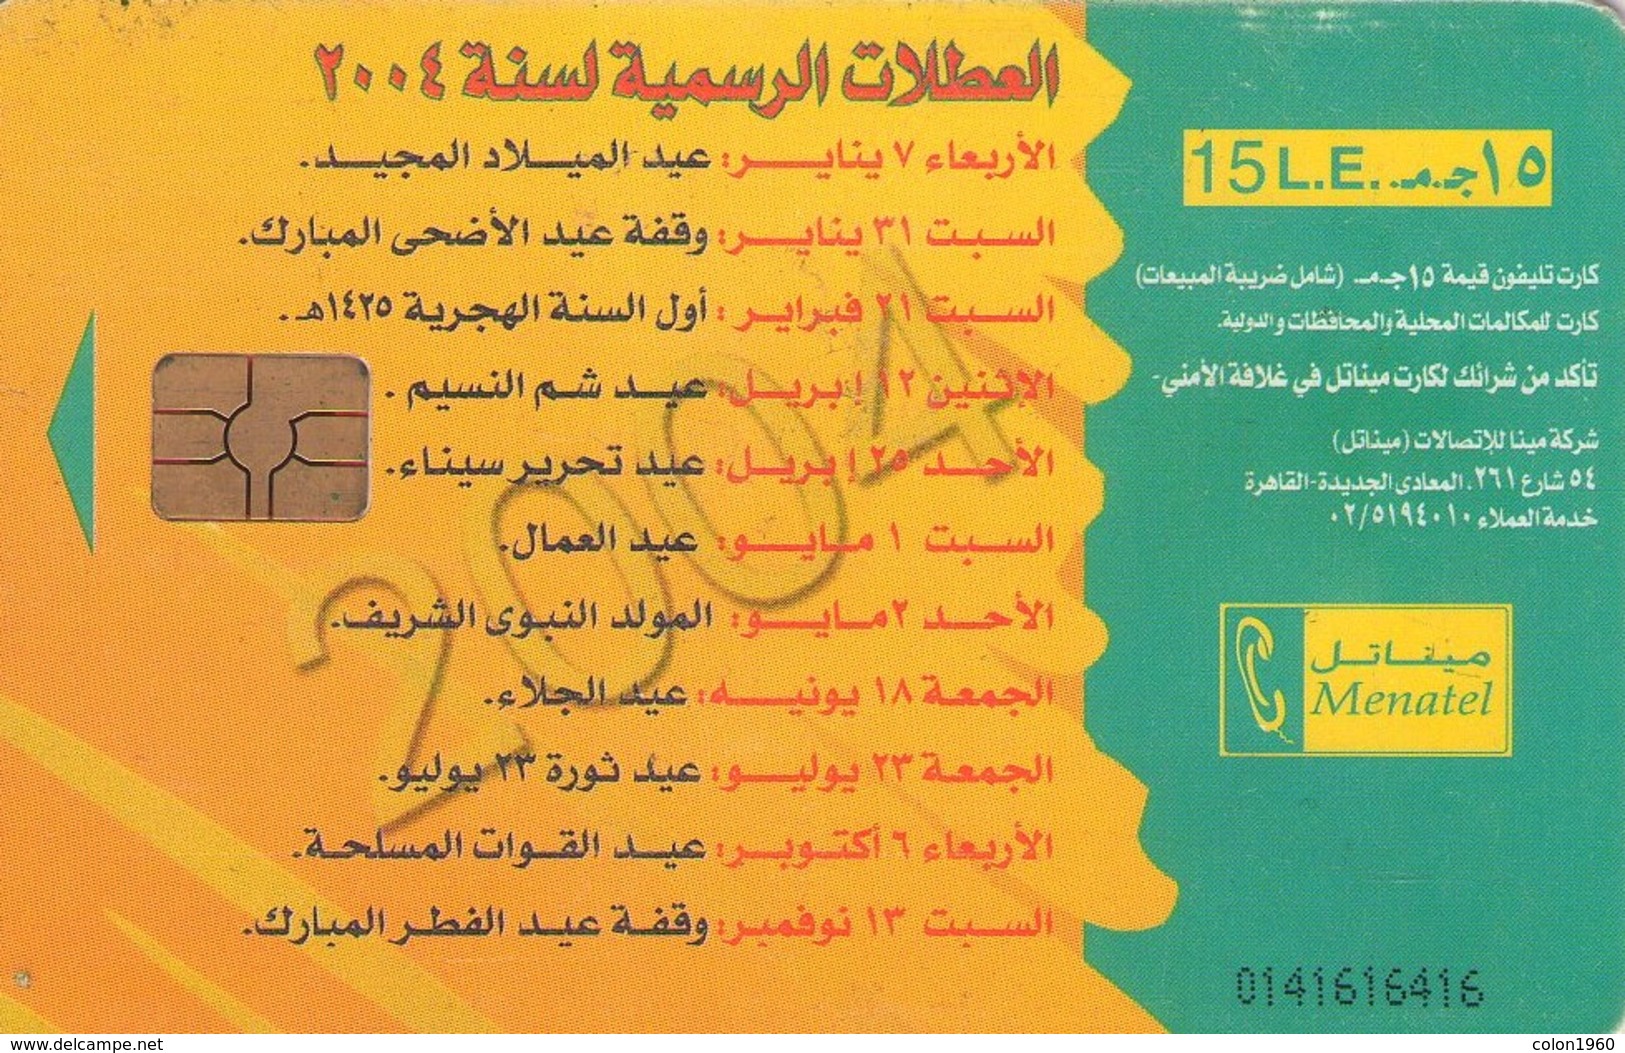 EGIPTO. EG-MEN-0064A. 2004 Calendar (Gem). (483) - Egipto